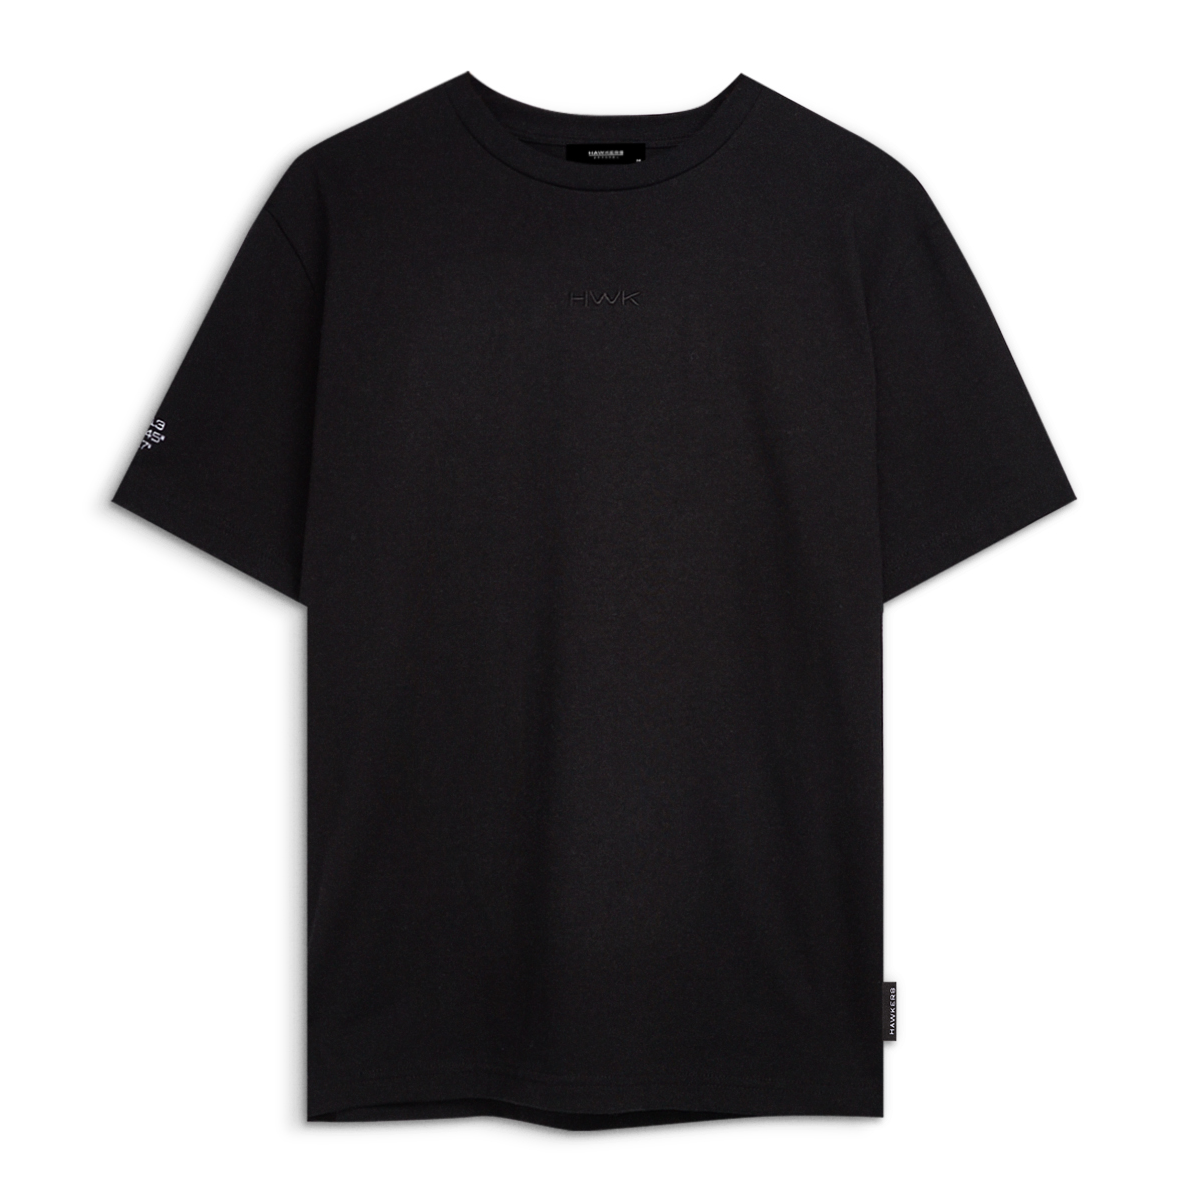 Lax T-shirt Black (s)